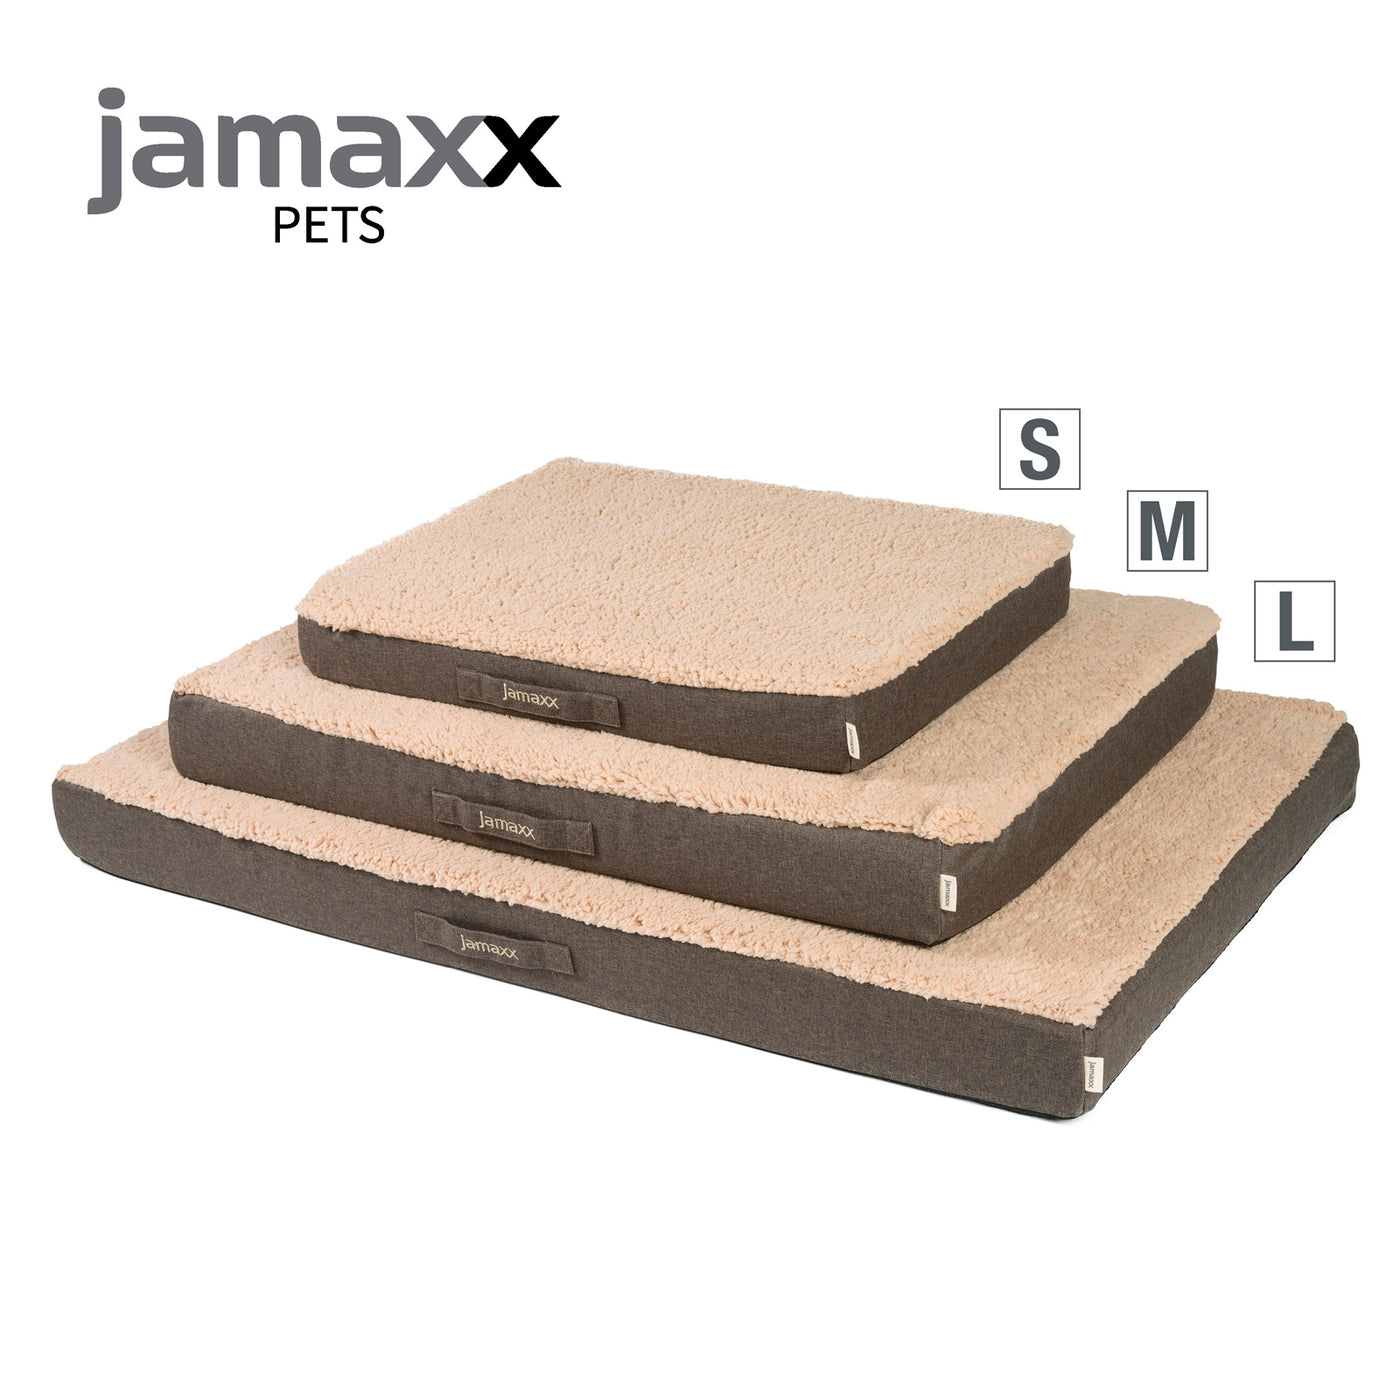 Hundematte mit orthopädischer Füllung und flauschigem Bezug aus Lammfell-Imitat, in drei Größen erhältlich.